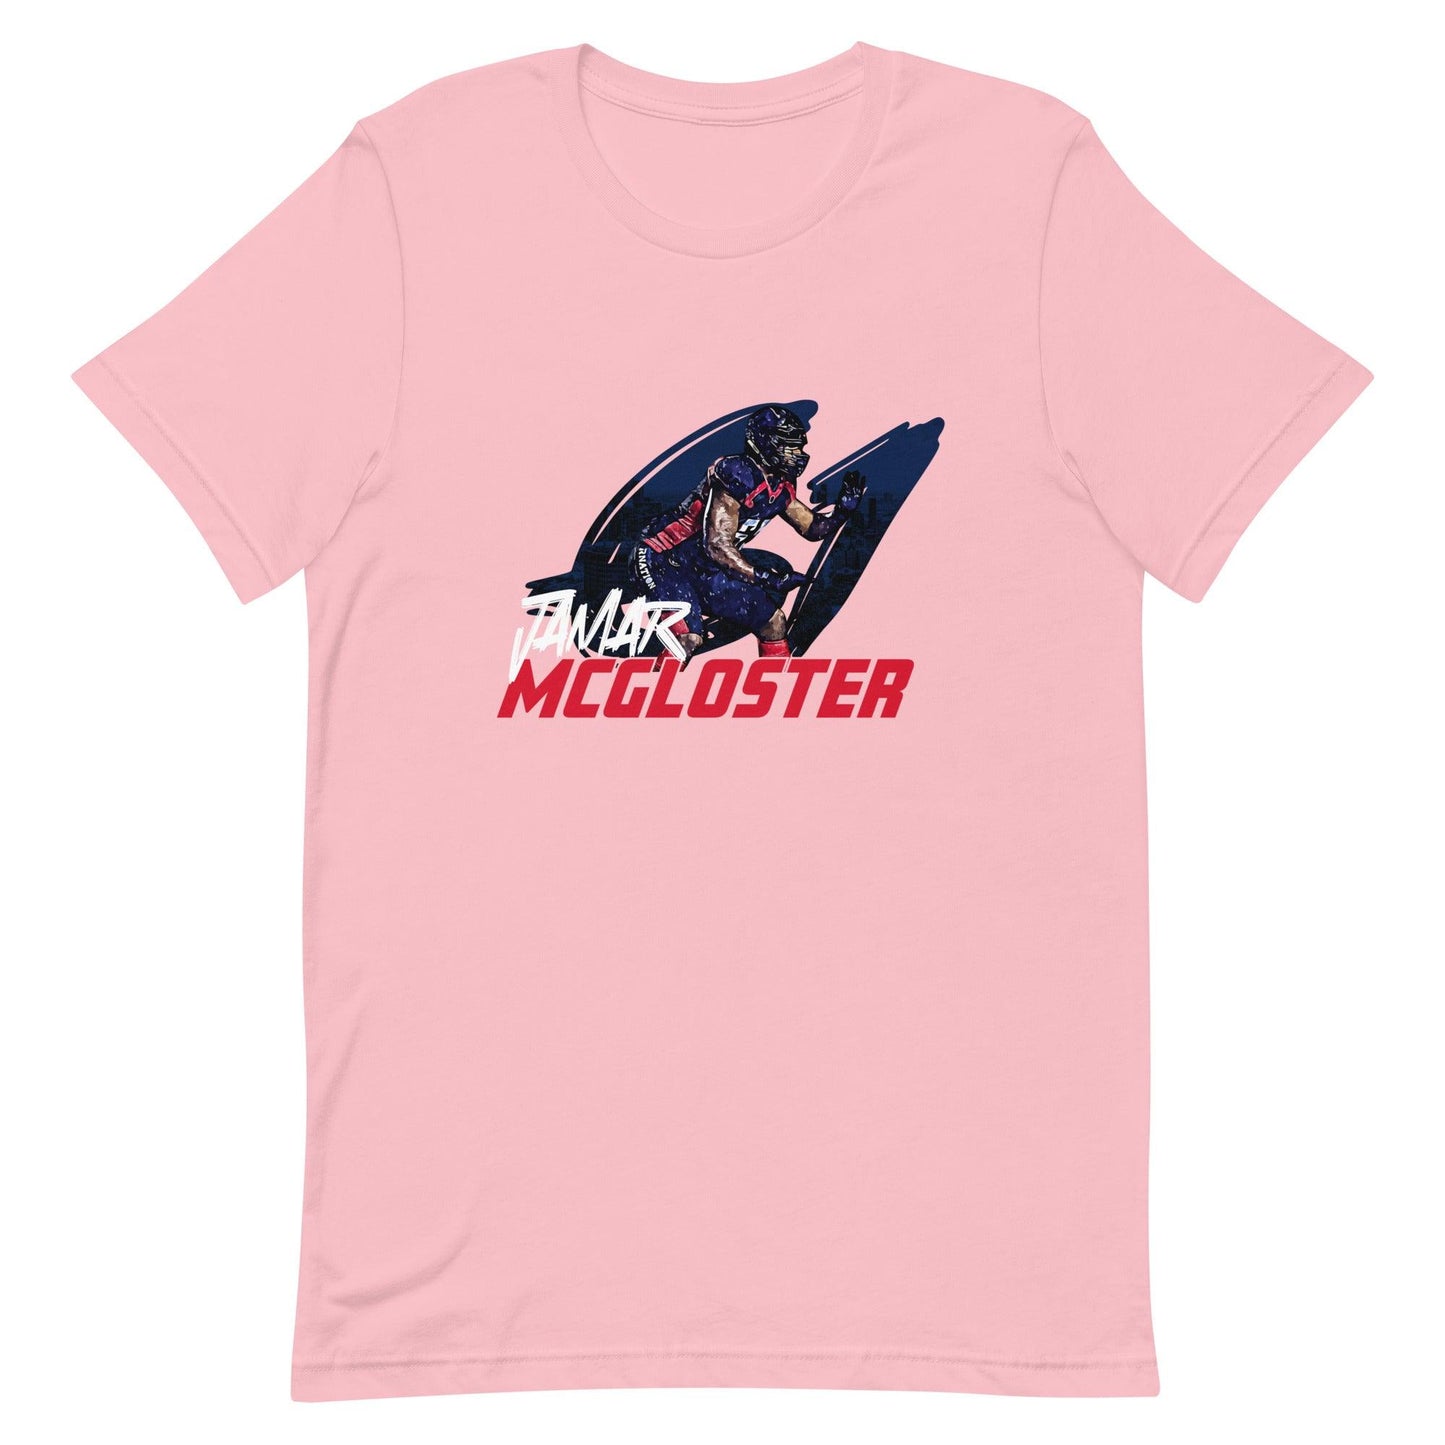 Jamar McGloster "Gameday" t-shirt - Fan Arch